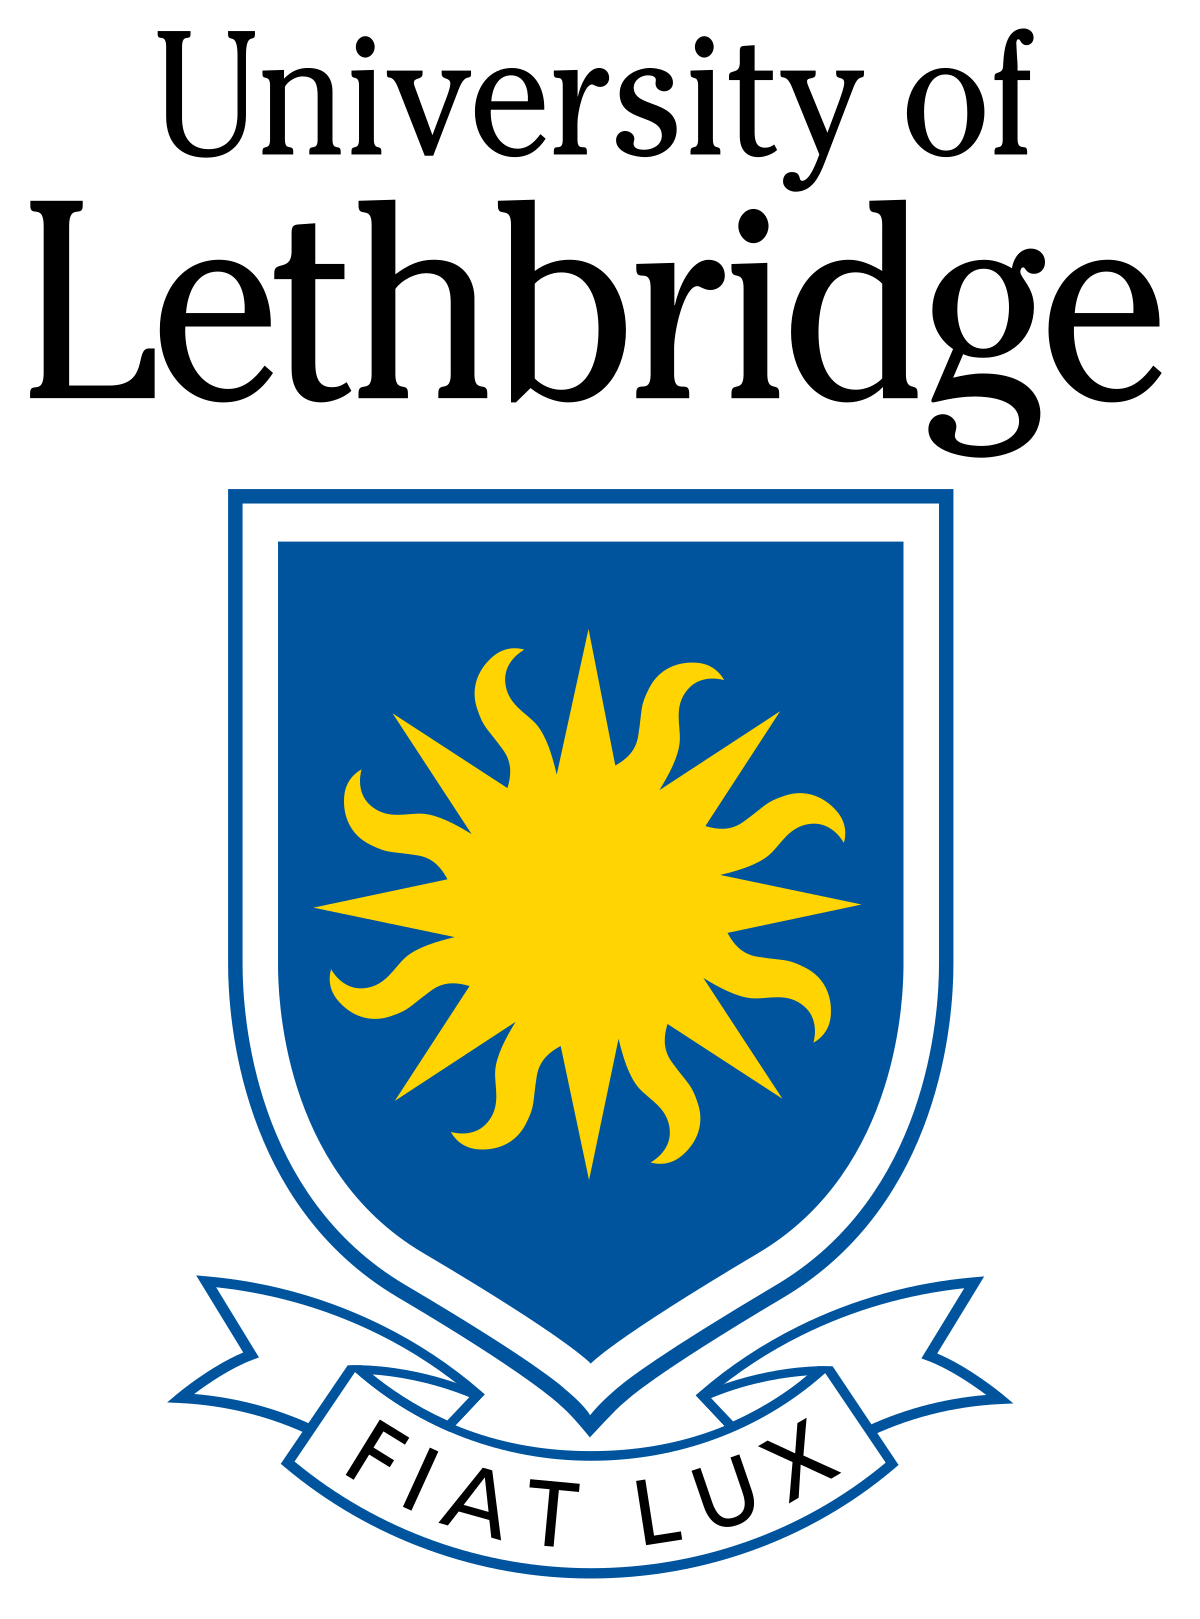 ULeth logo.png